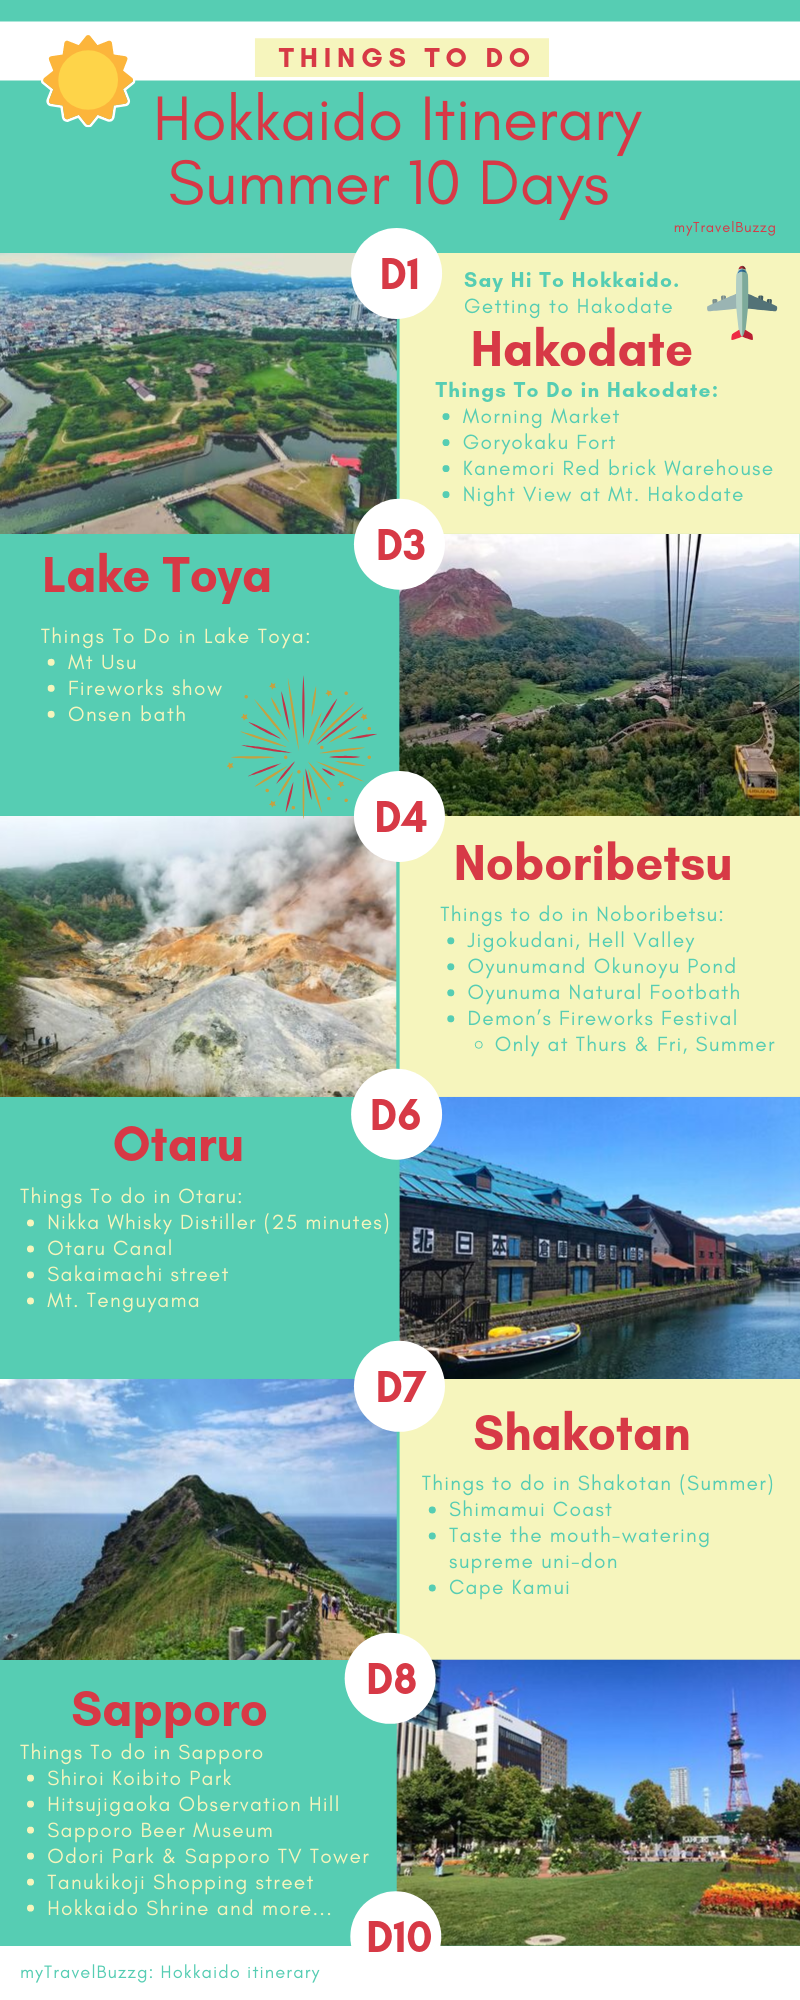 Hokkaido Itinerary 10 Days in Summer